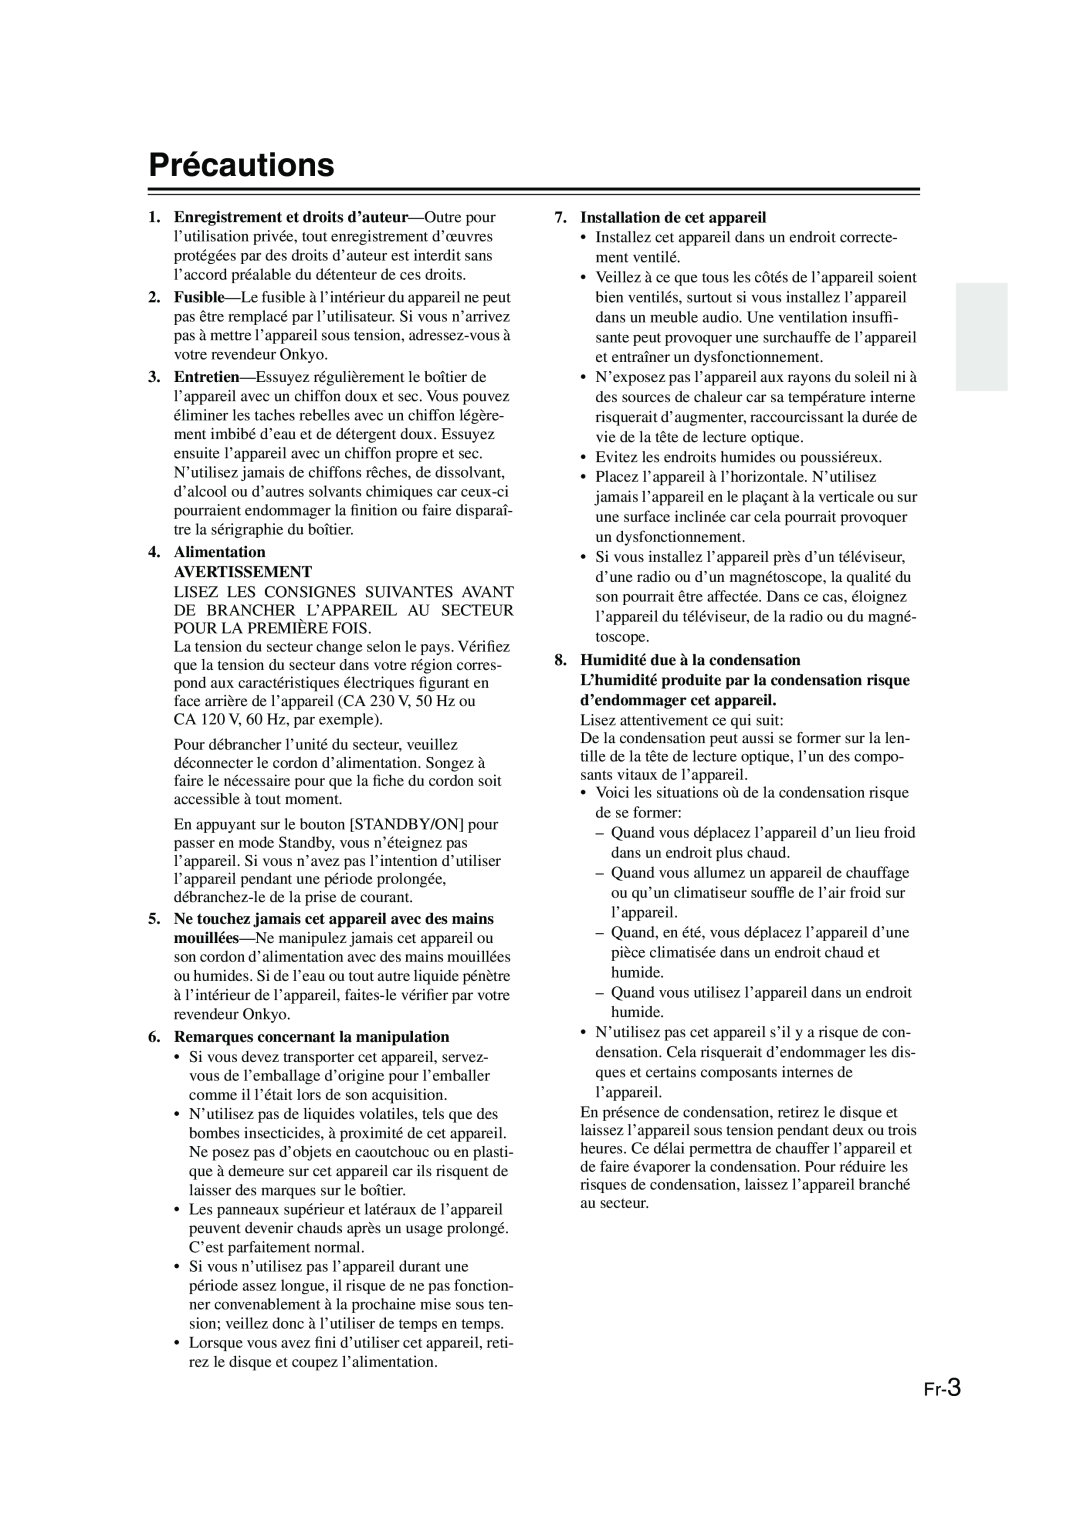 Onkyo CBX-300 instruction manual Précautions, Fr-3, Alimentation AVERTISSEMENT, Remarques concernant la manipulation 